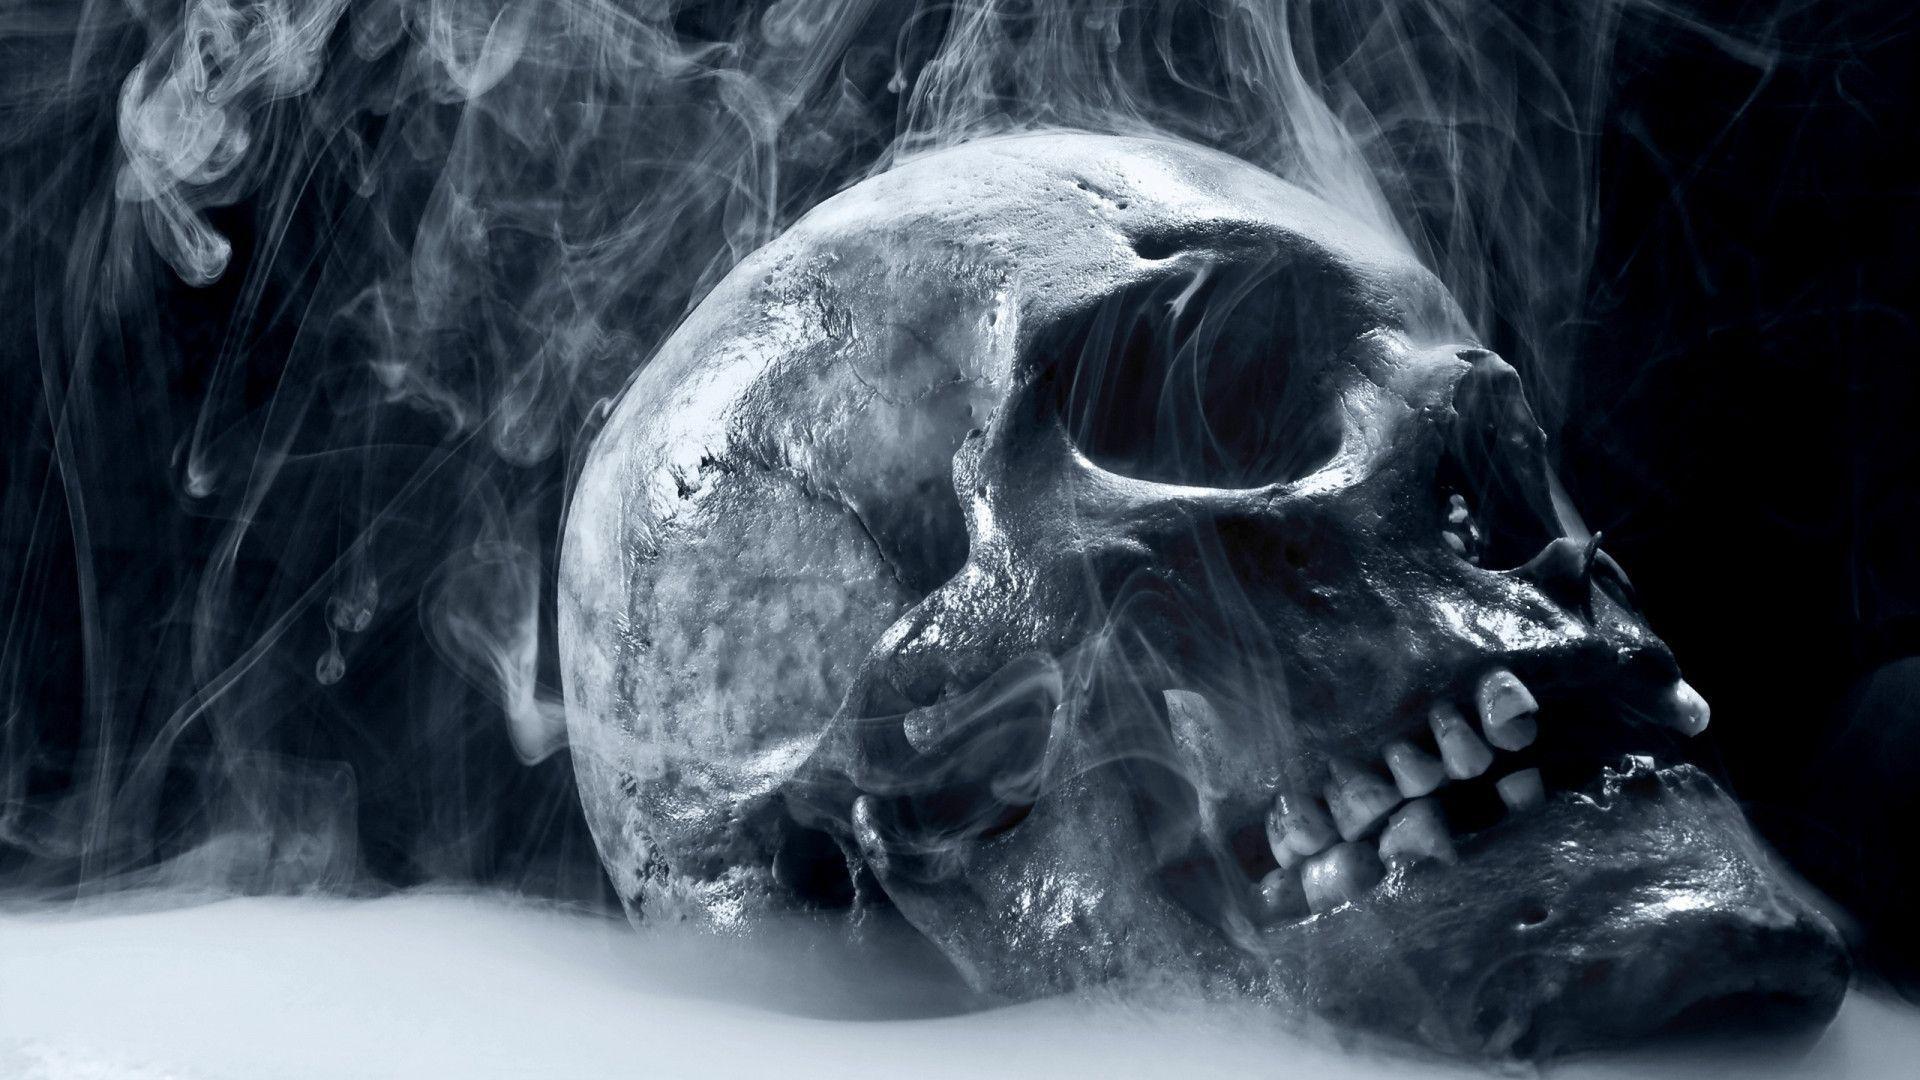  Totenkopf Hintergrundbild 1920x1080. Skull Desktop Wallpaper Free Skull Desktop Background